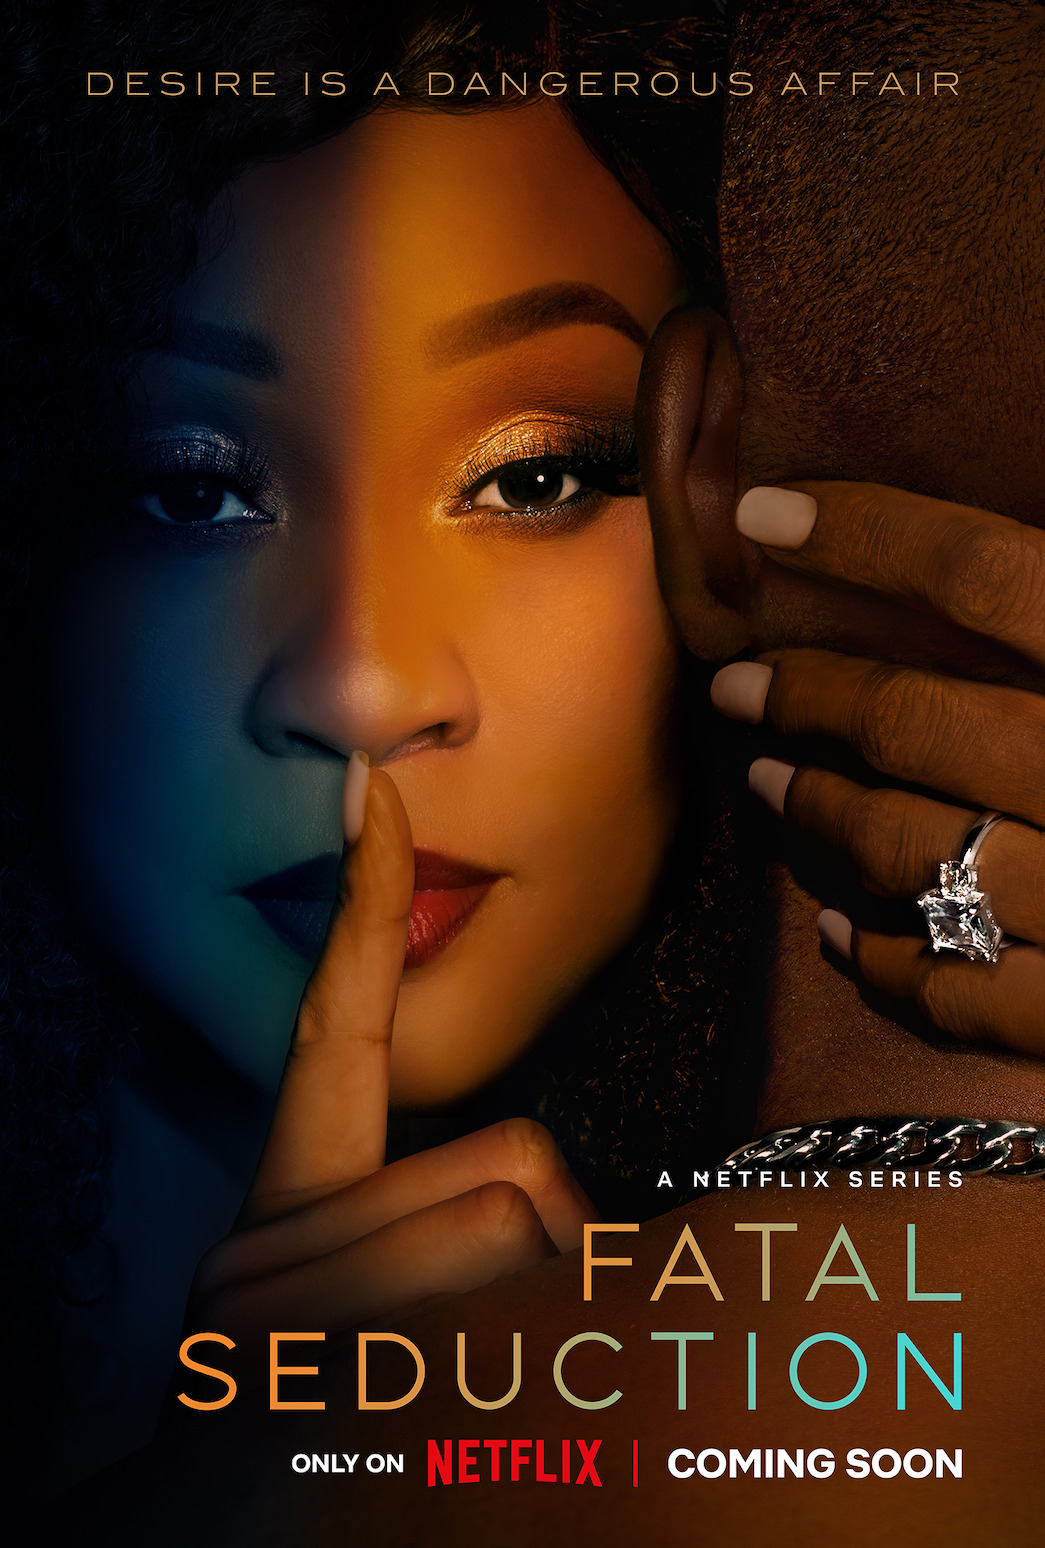 Fatal Seduction Cast Plot Release Date And Trailer Netflix Tudum 